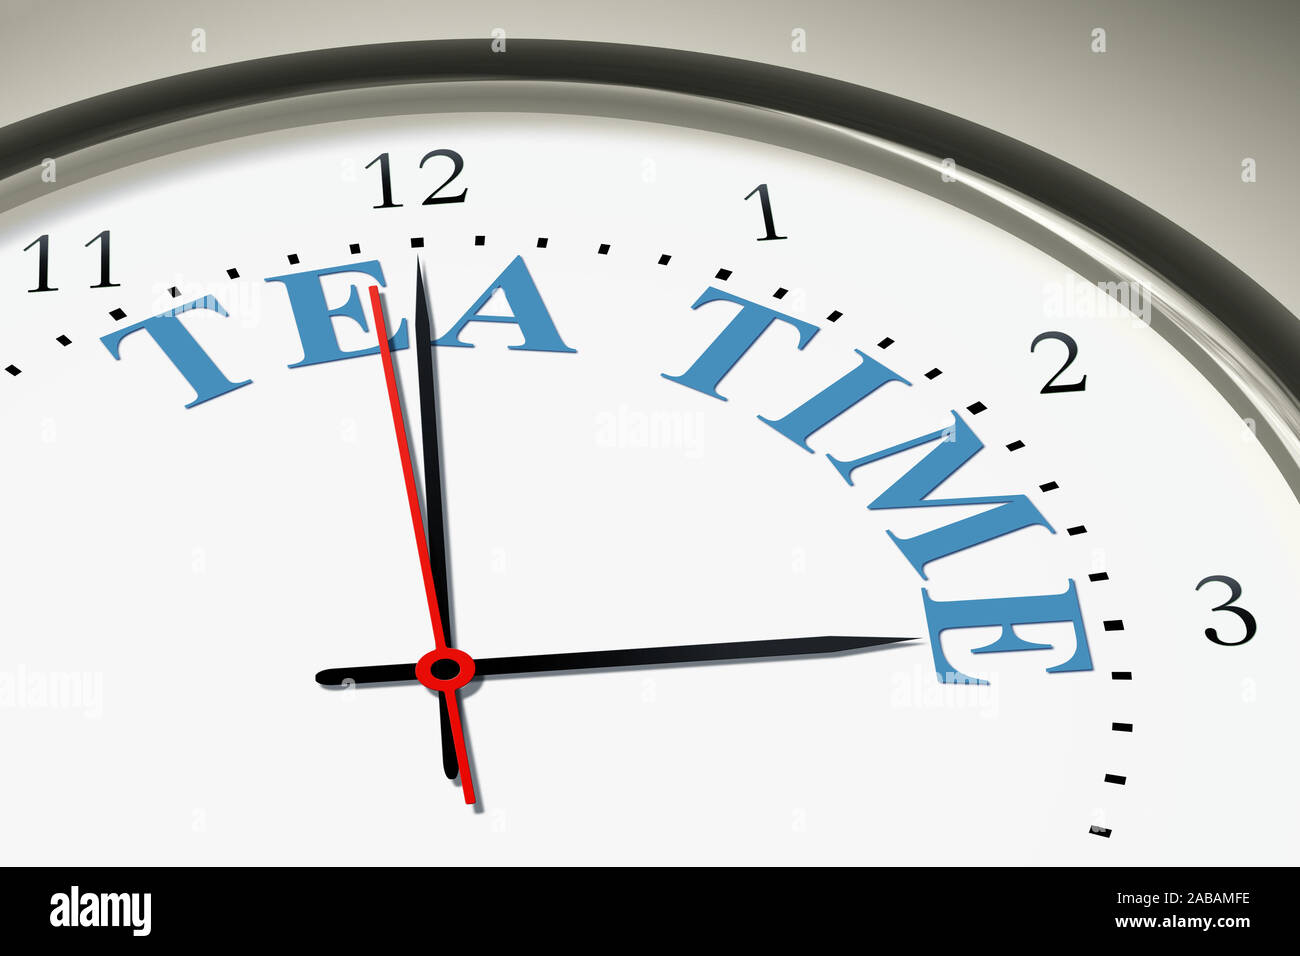 Ein simples Ziffernblatt einer Uhr mit der Aufschrift: 'Tea Time' Stock Photo